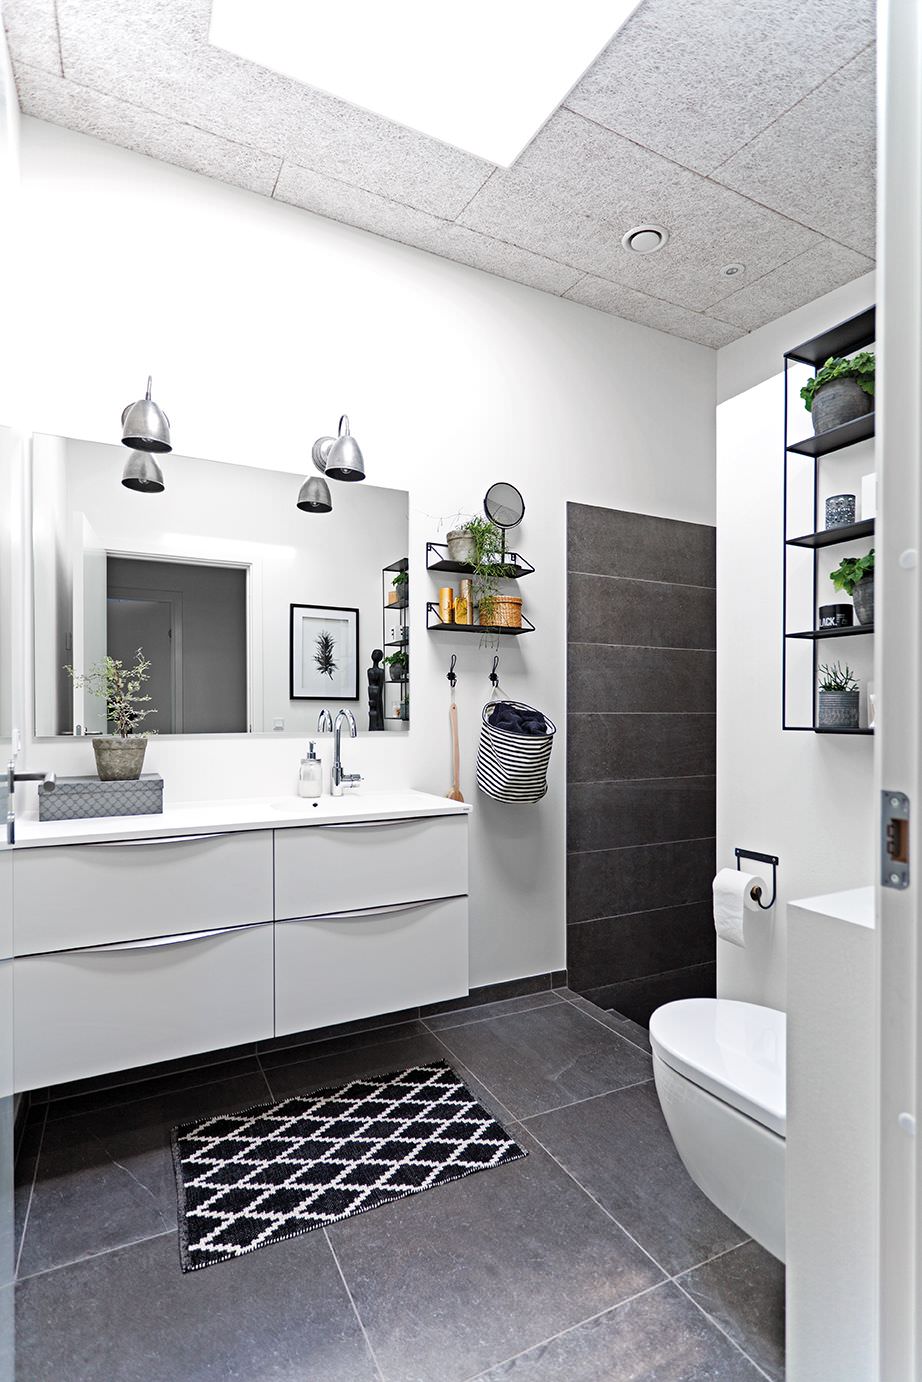 دکوراسیون سرویس بهداشتی و حمام مدرن و شیک با دیوار، روشویی و توالت فرنگی سفید که رنگ ثانویه و سرامیک کف سیاه رنگ دارد